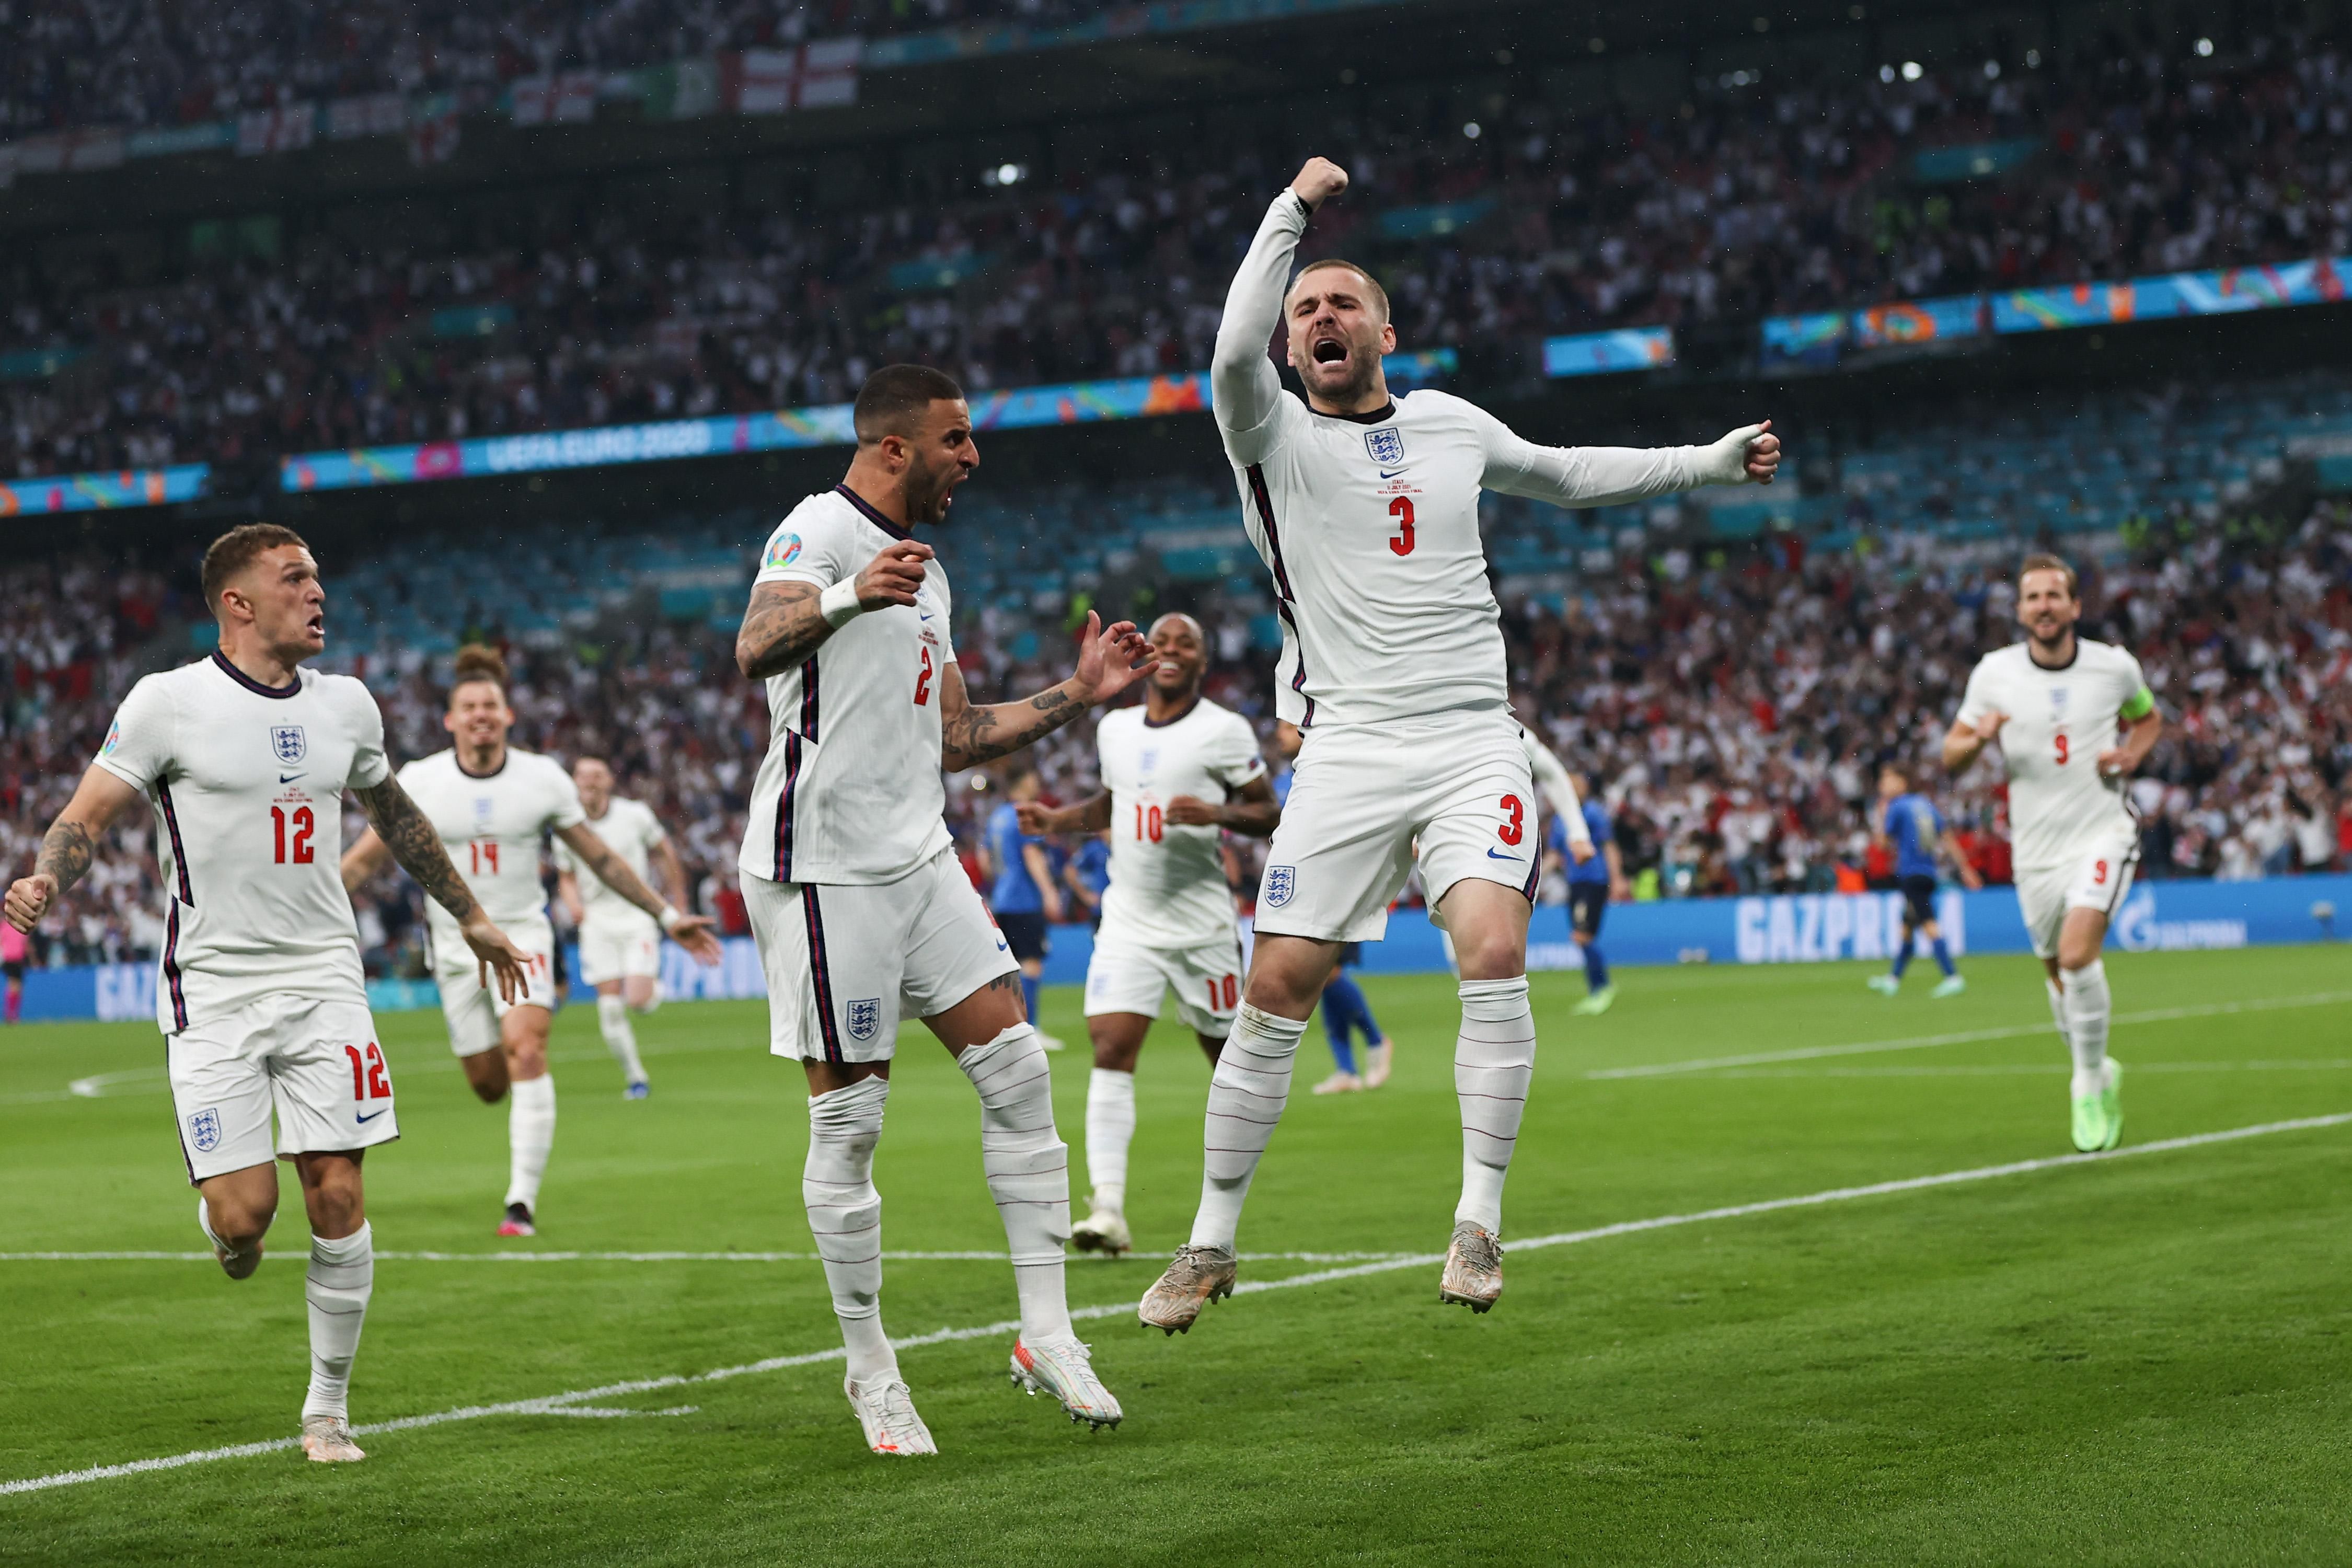 Англия на 2 минуте забила быстрый гол Италии в финале Евро 2020